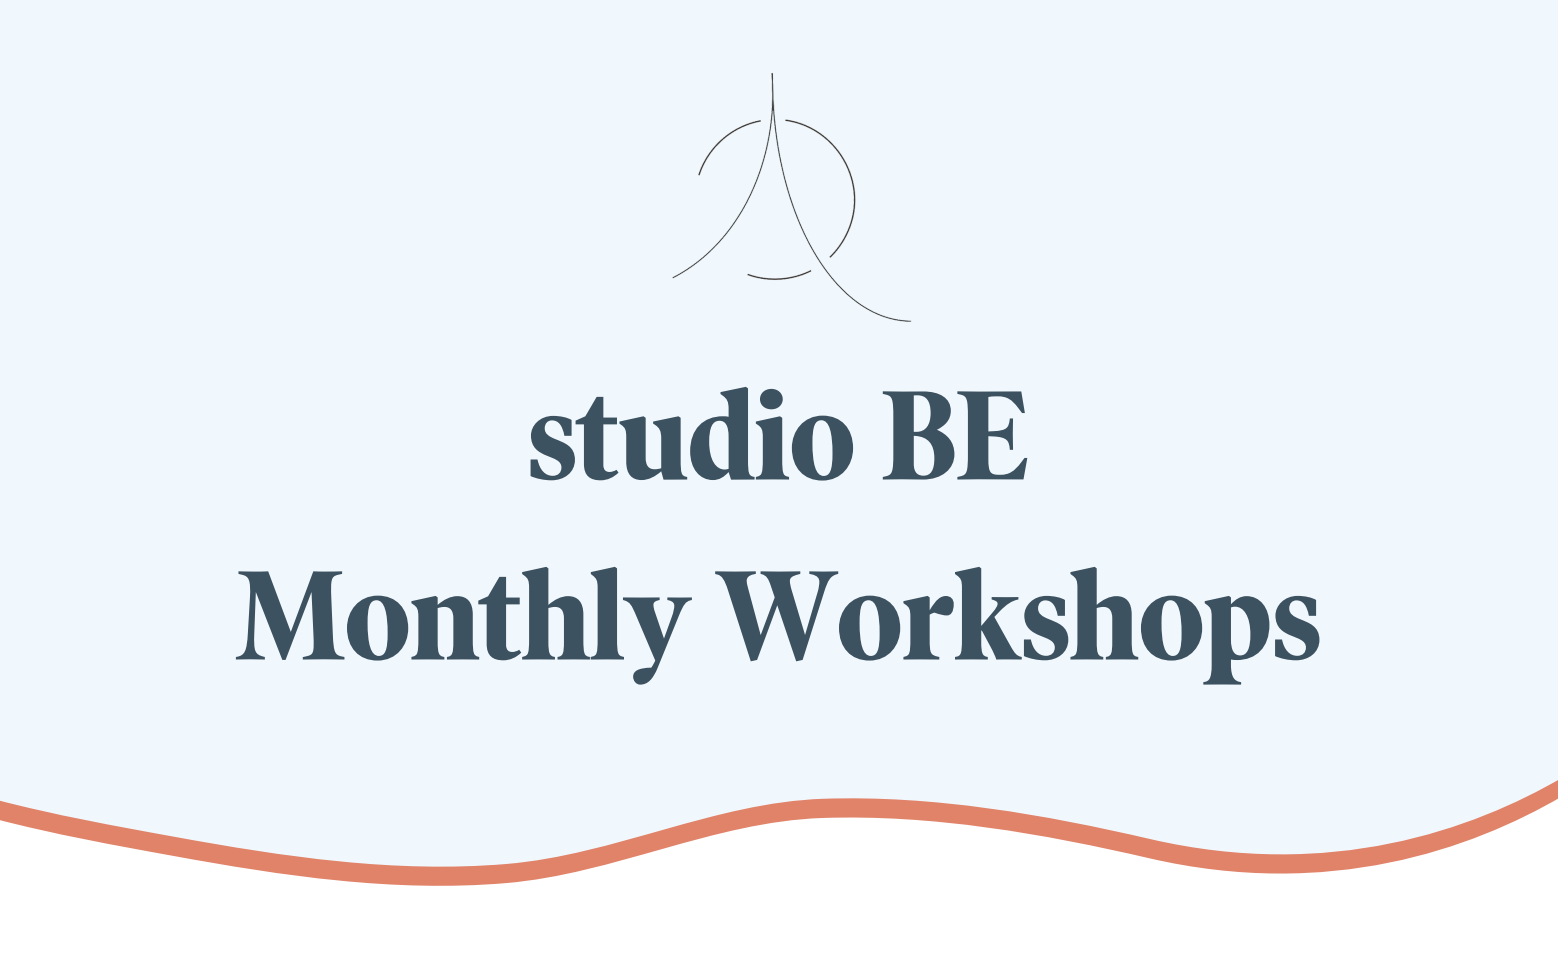 studio BE Workshop Schedule